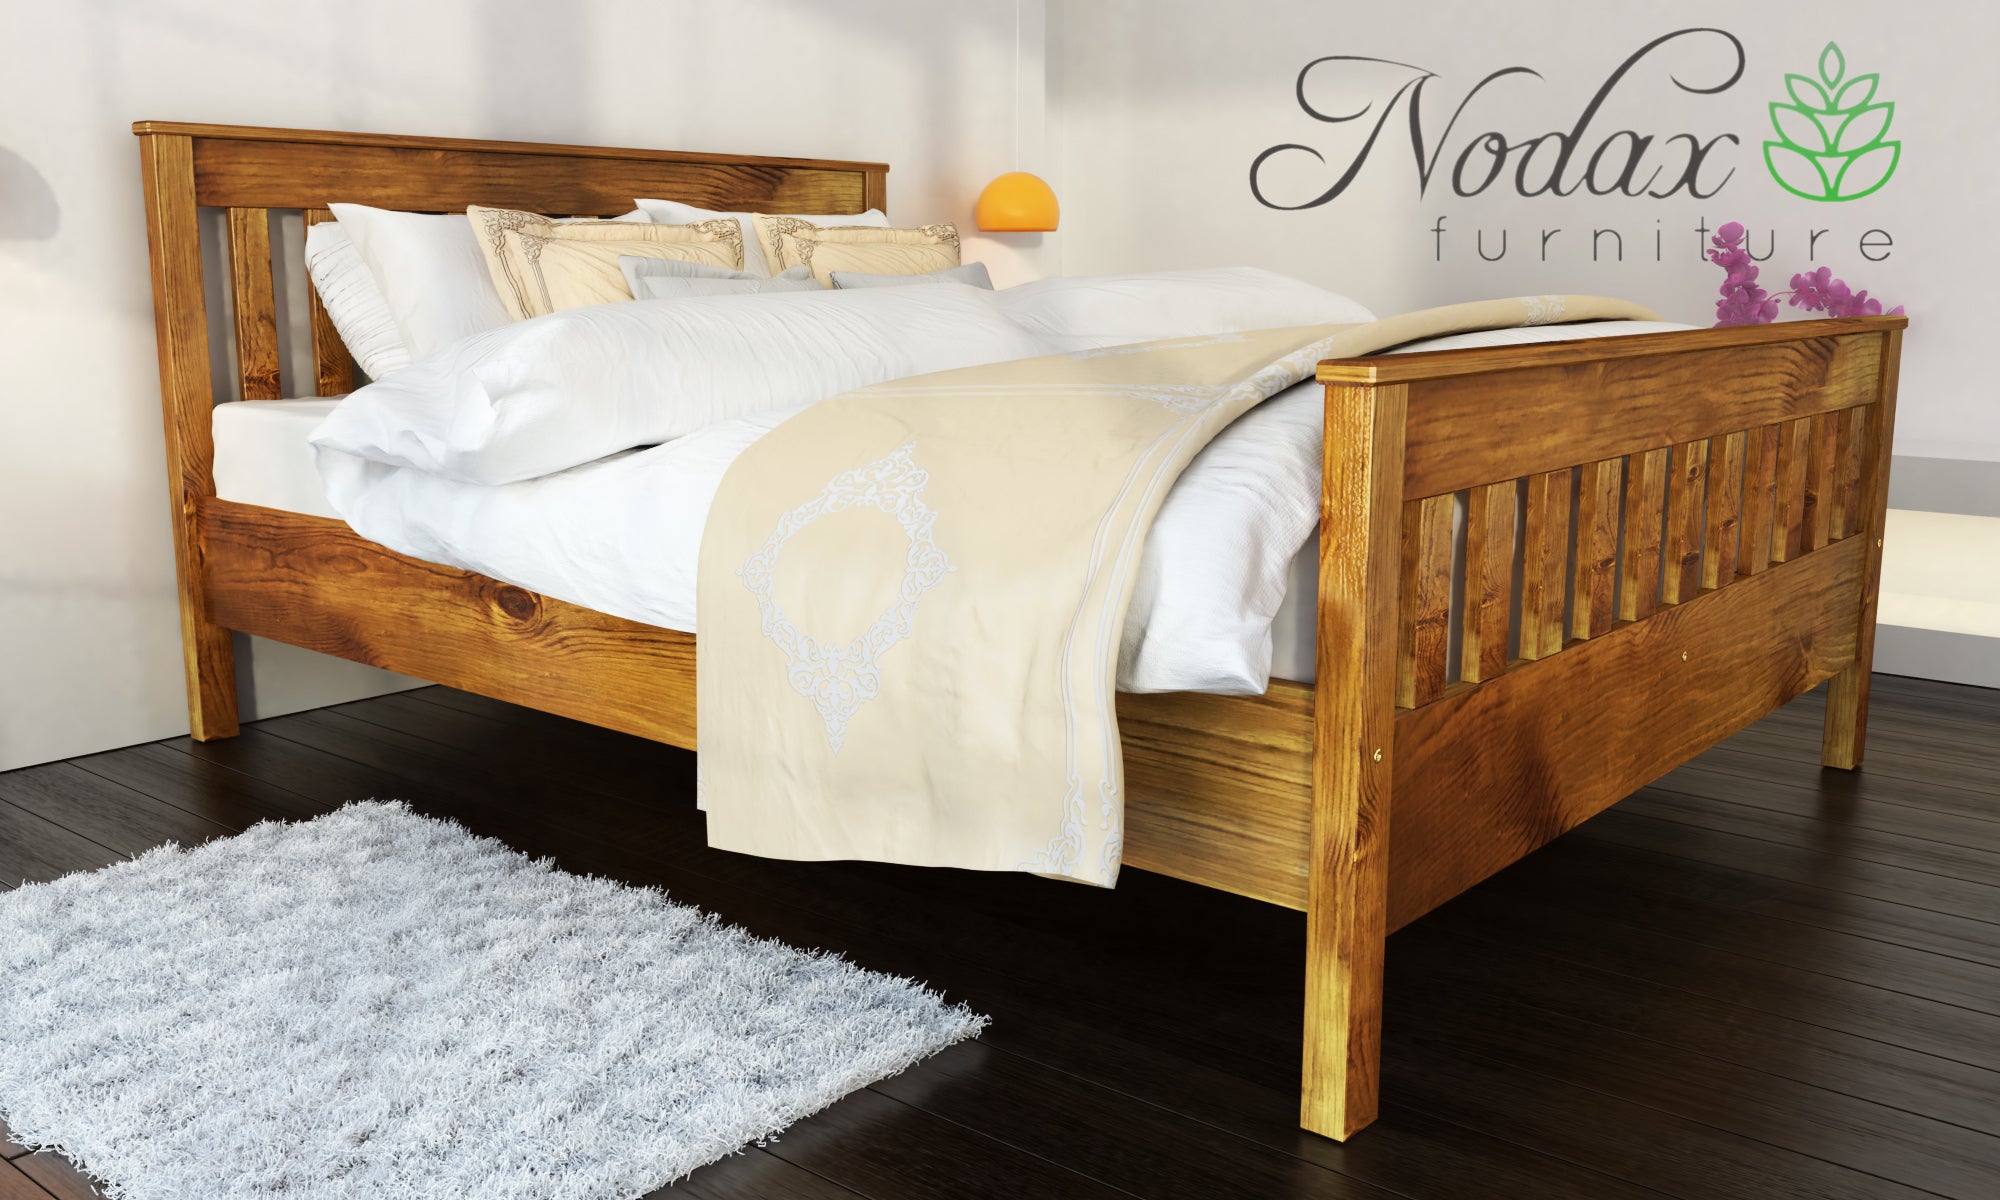 Wooden-bed-frame-Bedroom-furniture